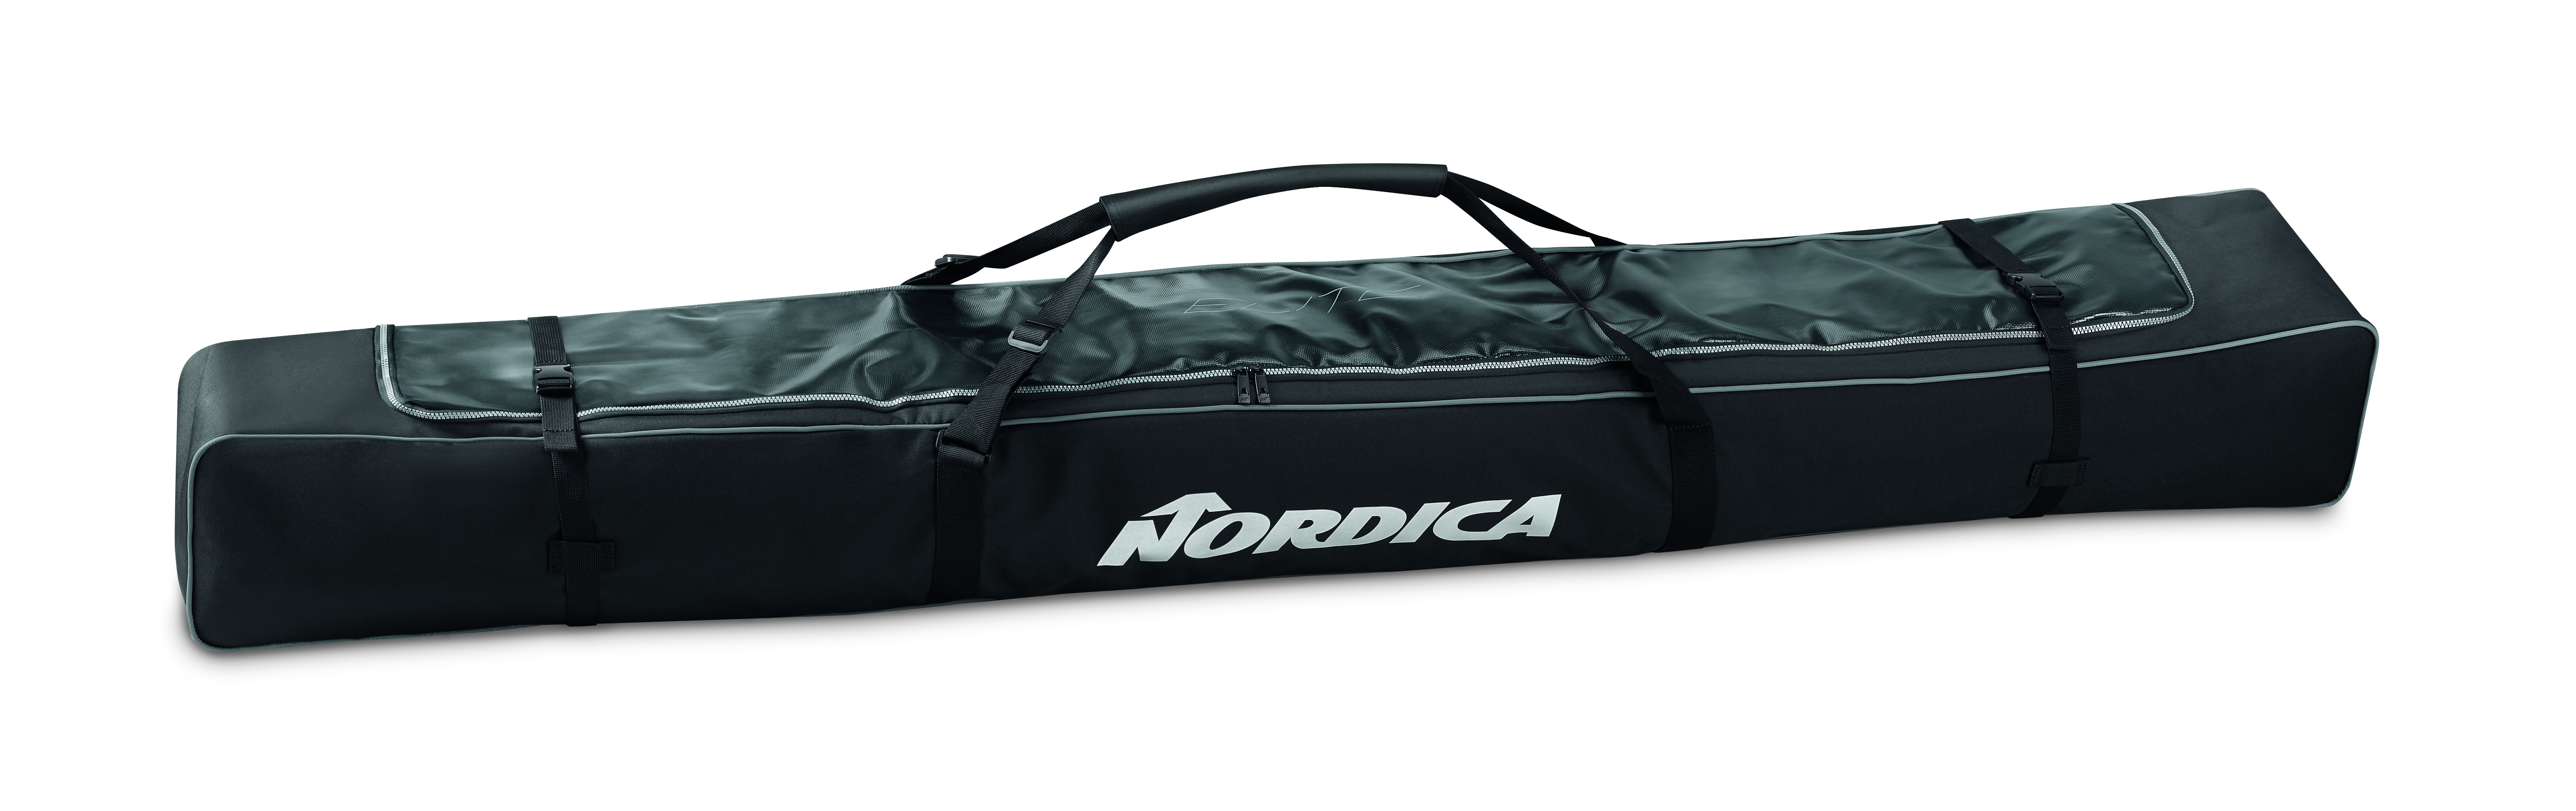 NORDICA Ski Bag Lite Skisack Skitasche 300770 